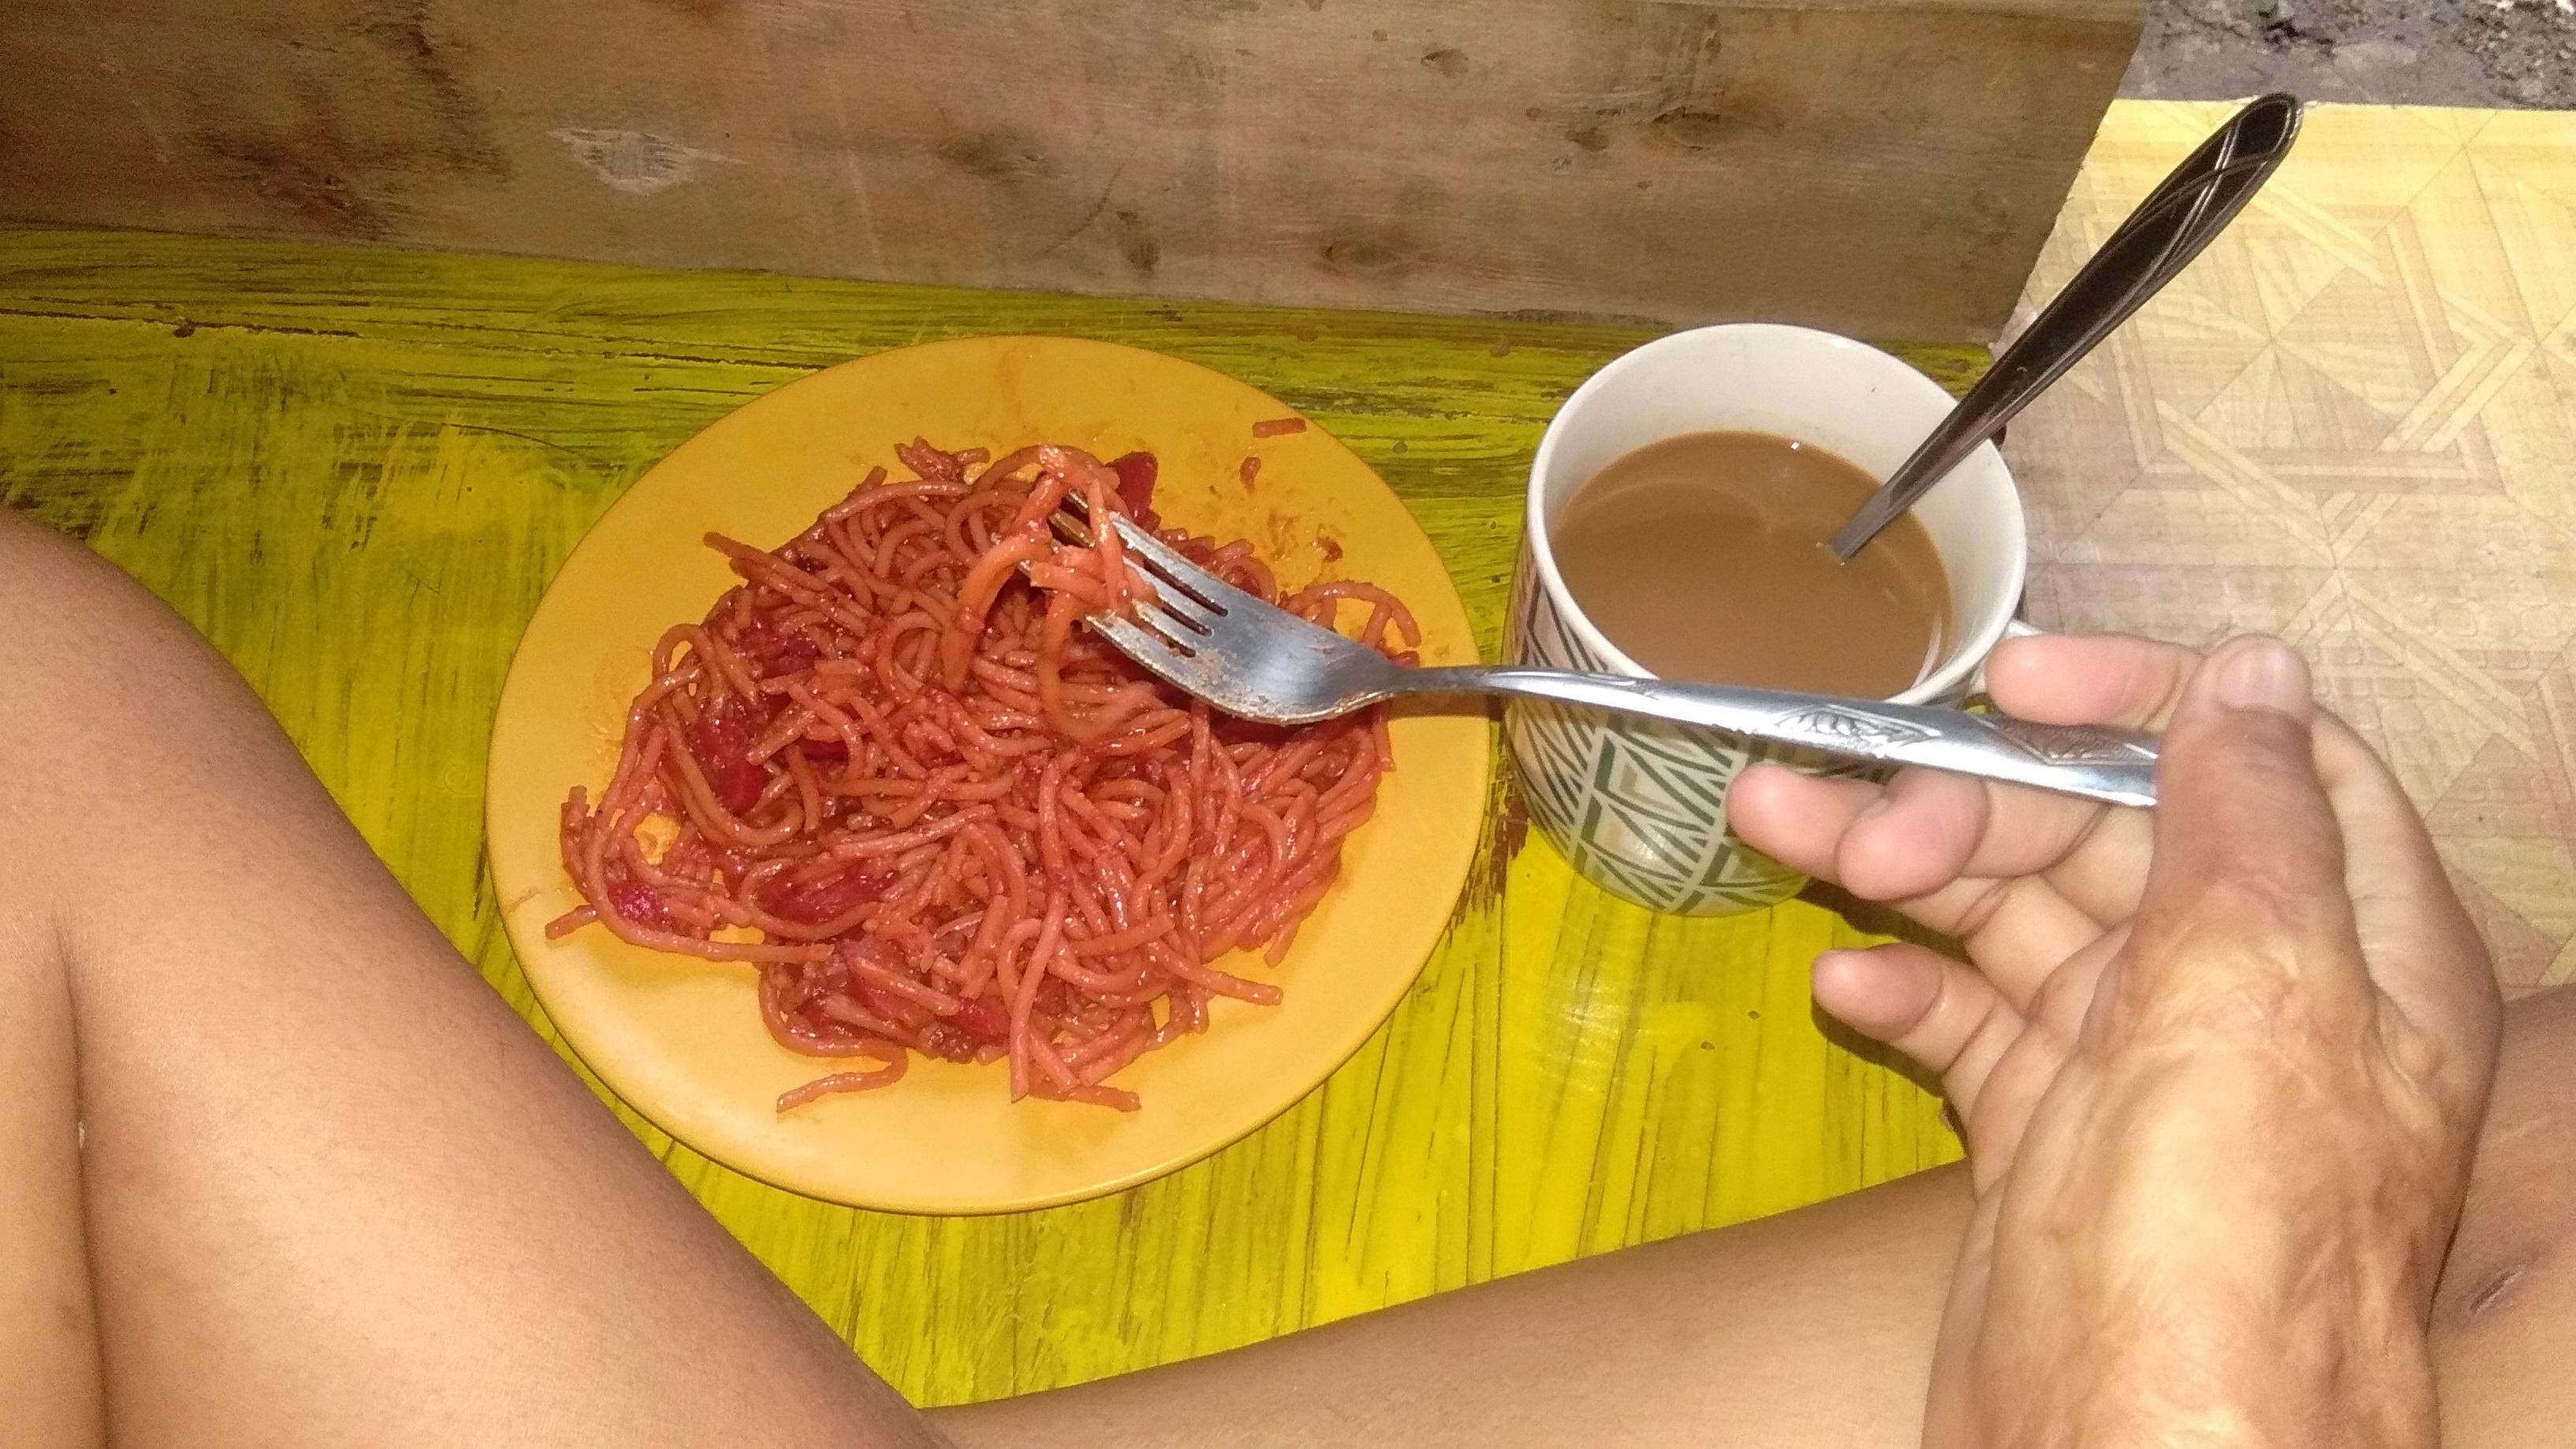 Coffee with spaghetti